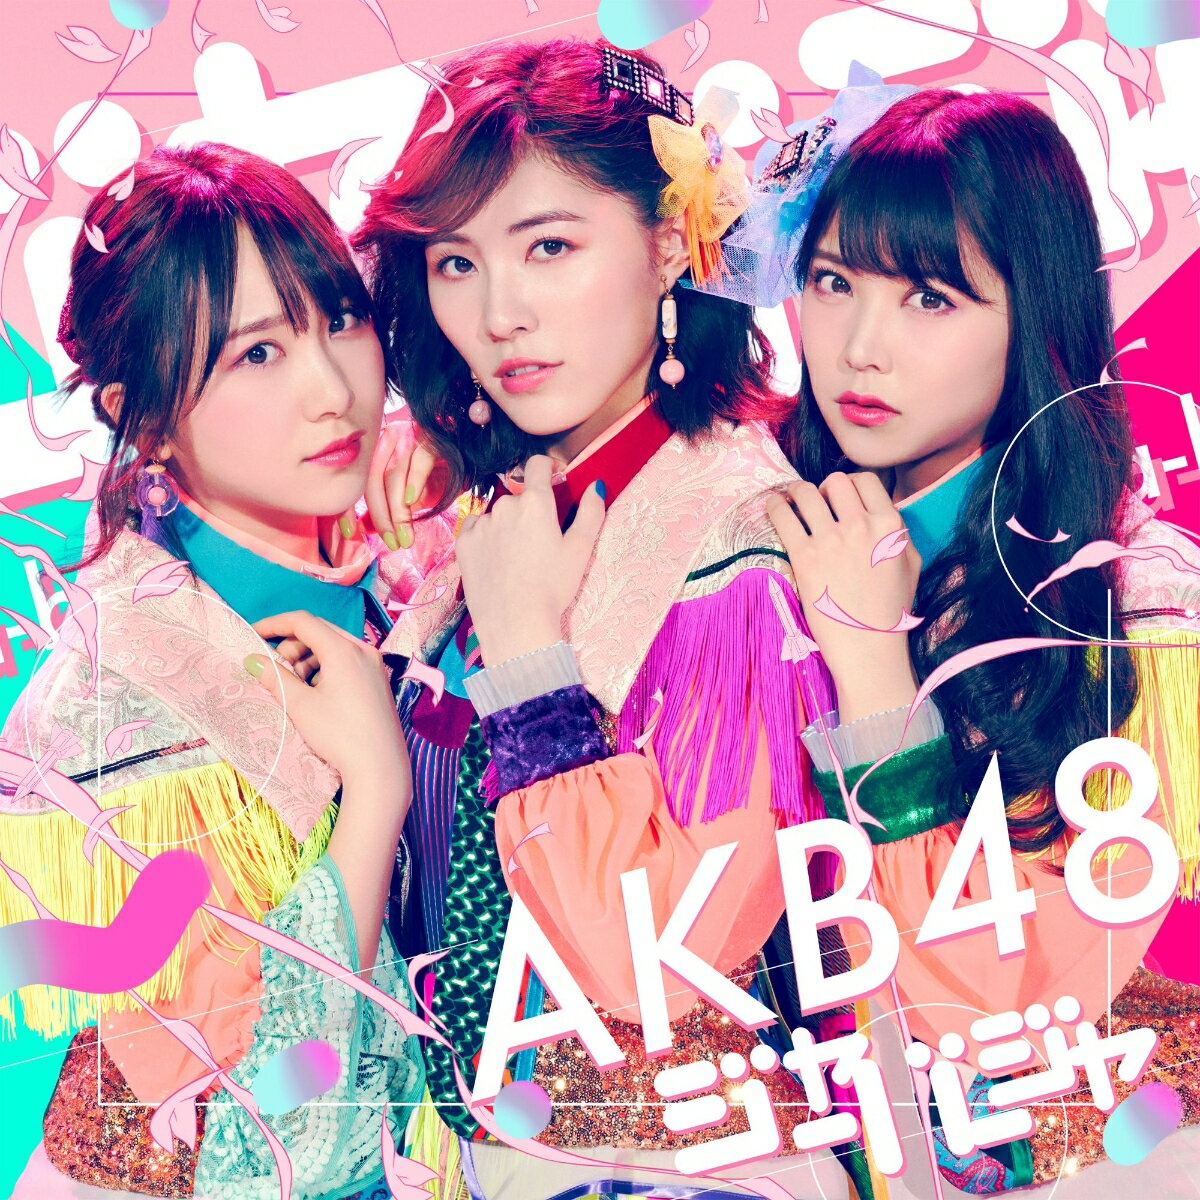 AKB48の2018年第一弾シングル!前作「11月のアンクレット」を最後に、
常に選抜メンバーであった渡辺麻友が卒業。他にも多くのメンバーの卒業を経て、今作ではどんな選抜メンバーが選ばれるのか?